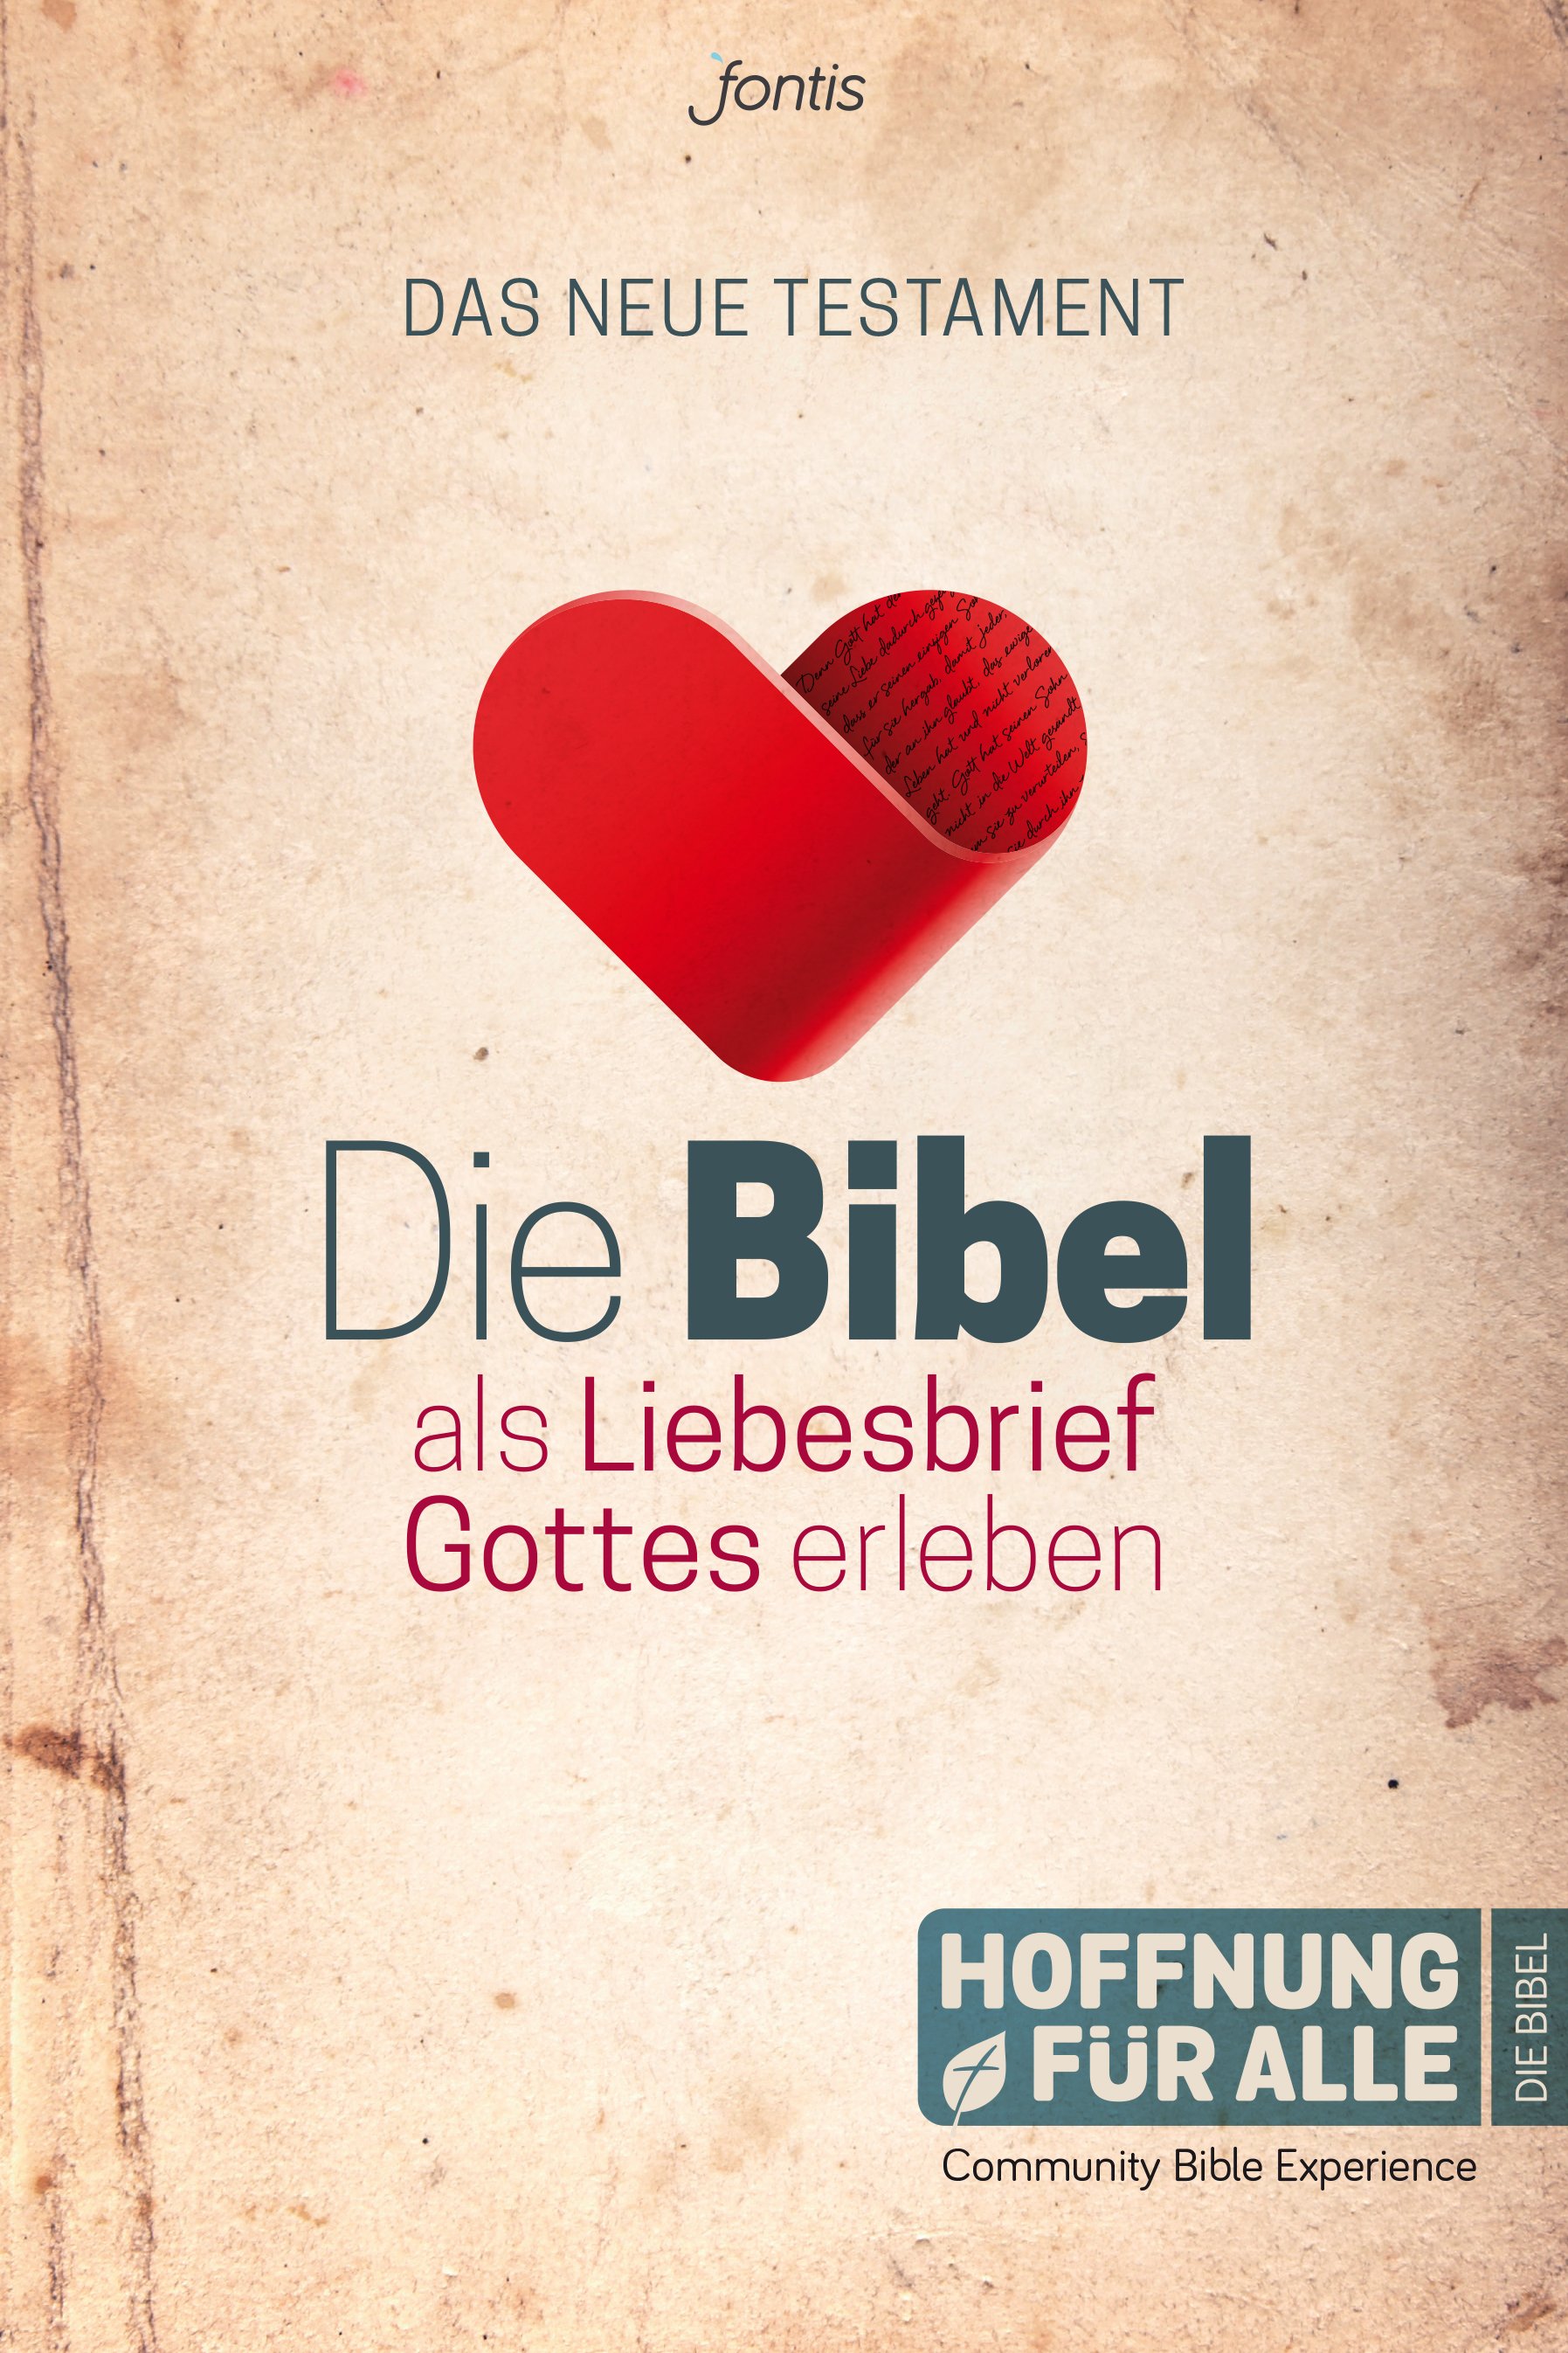 Hoffnung für alle 2015 - Die Bibel als Liebesbrief Gottes erleben - Das NT - Cover